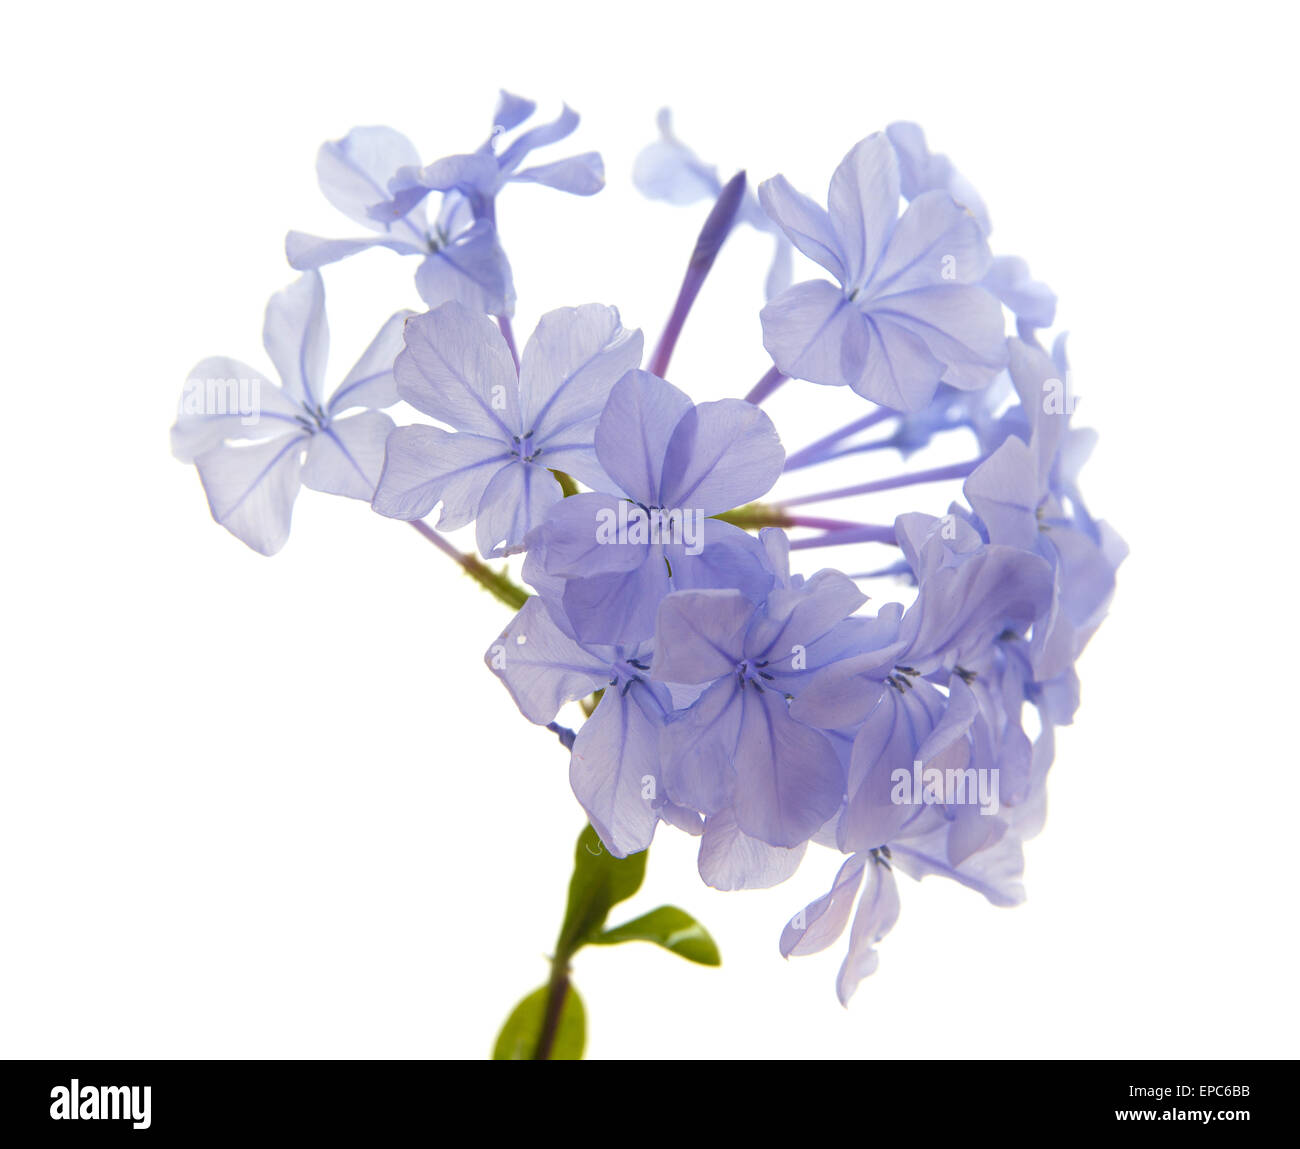 Plumbago auriculata or Blue Plumbago, isolated on white background Stock Photo